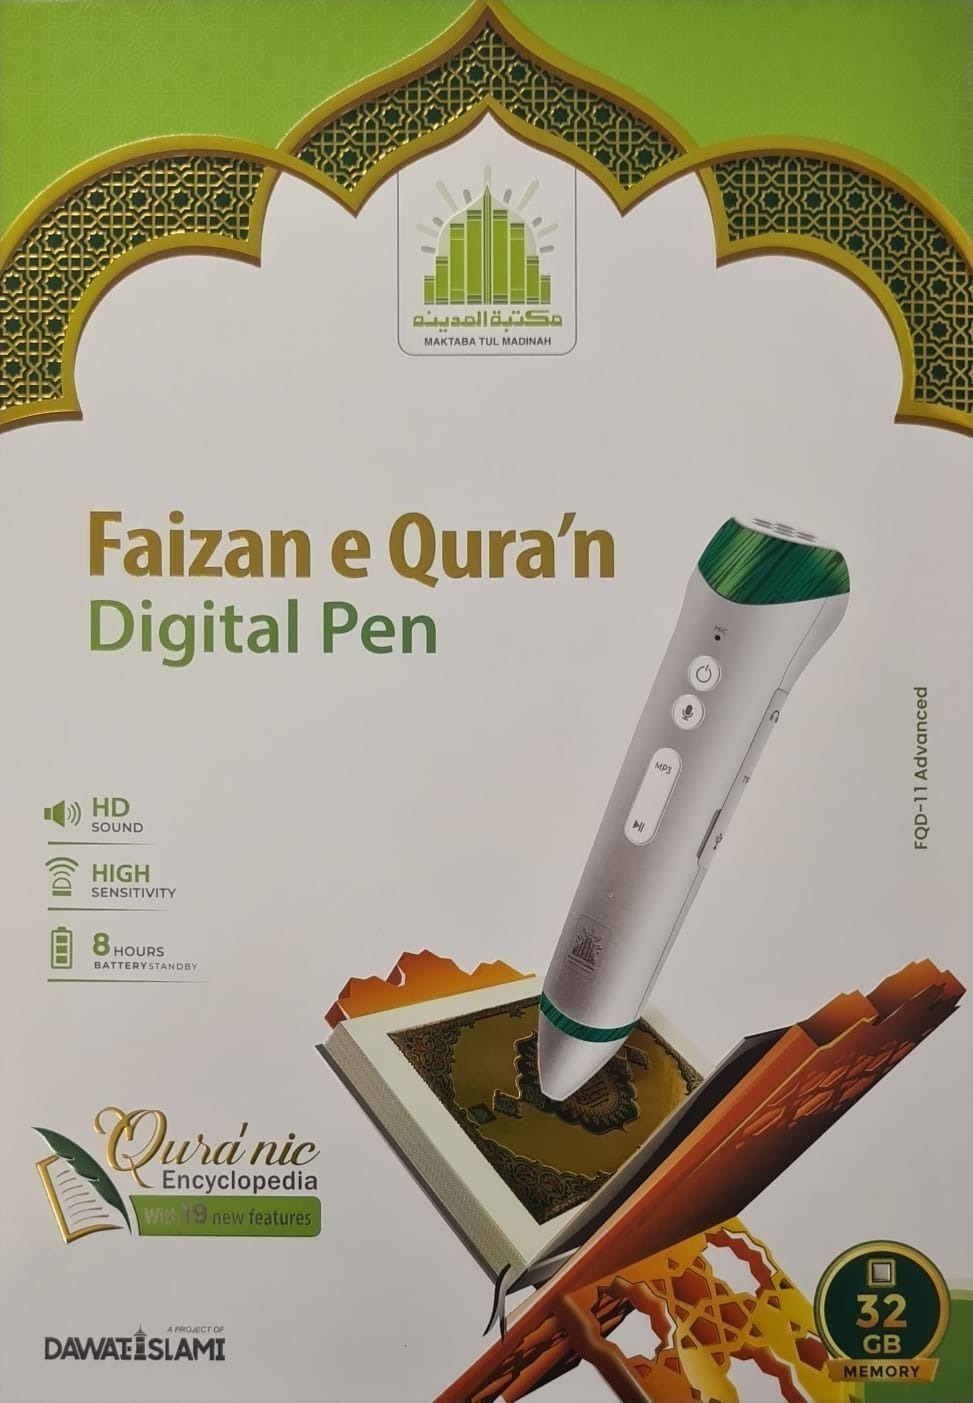 Faizan e Quran Digital pen